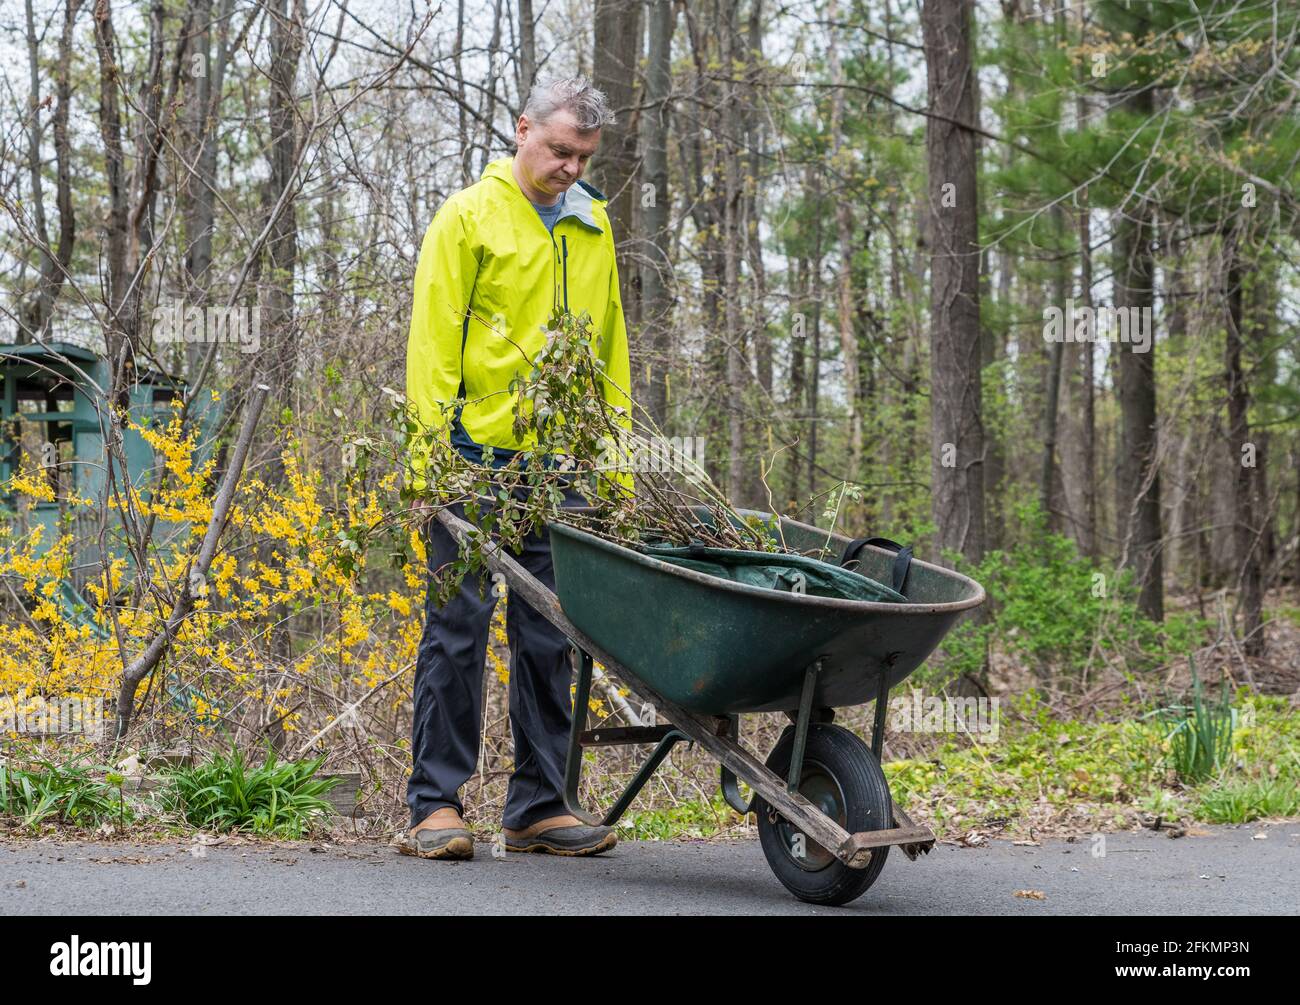 Pushing a Wheelbarrow In an American Garden Stock Photo